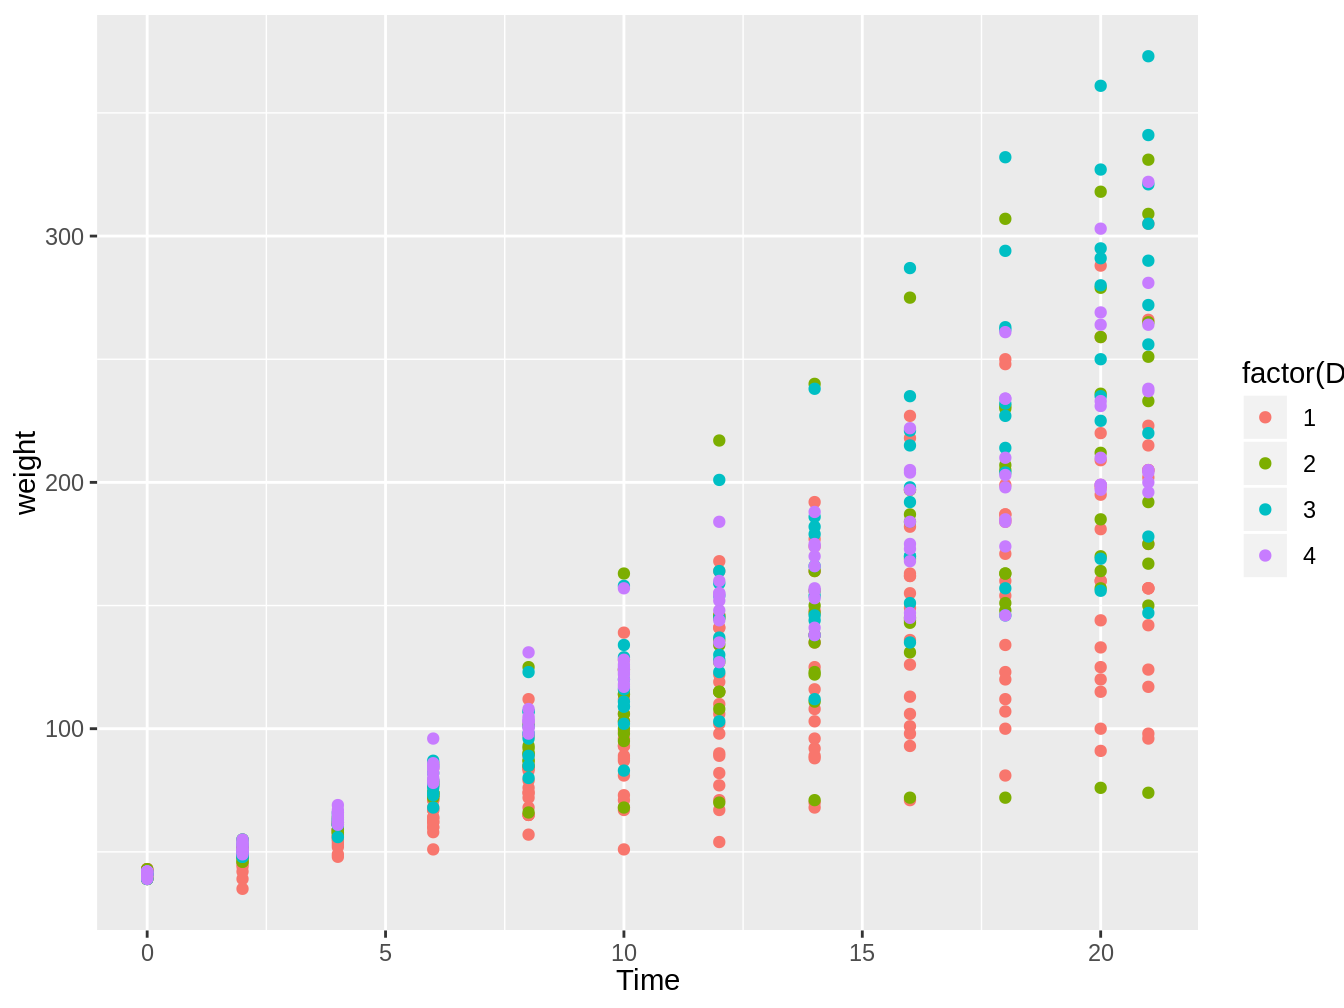 Gráfico en el cual vemos el peso de pollos en el tiempo, con colores distintos según el tipo de dieta